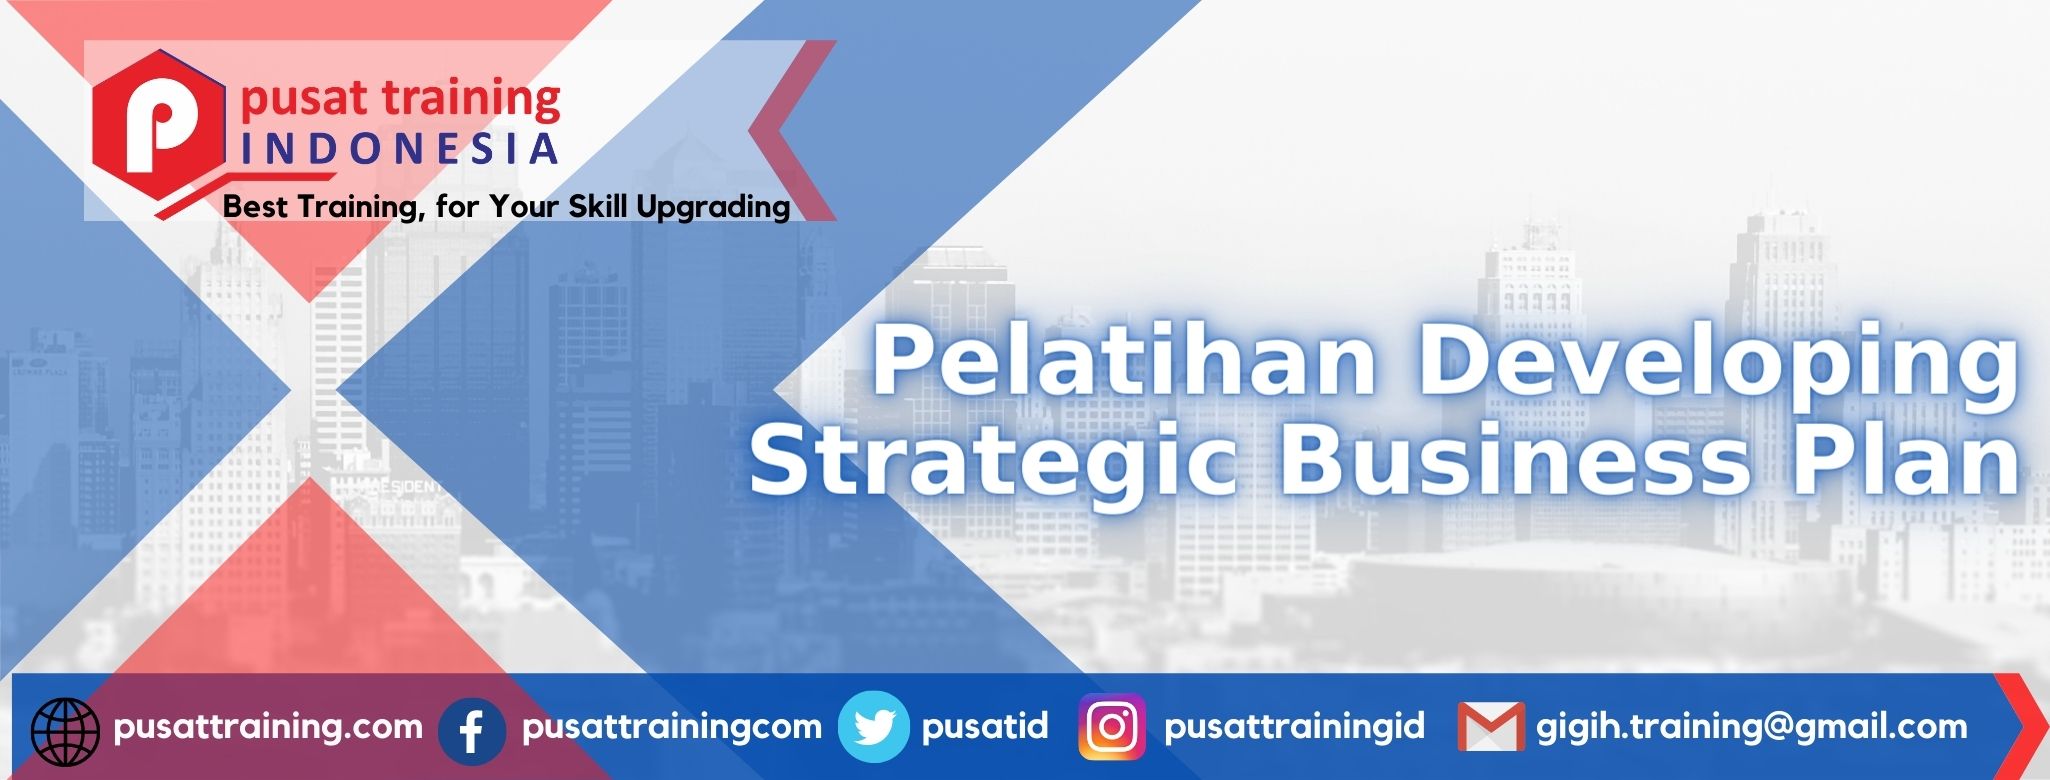 pelatihan-developing-strategic-business-plan